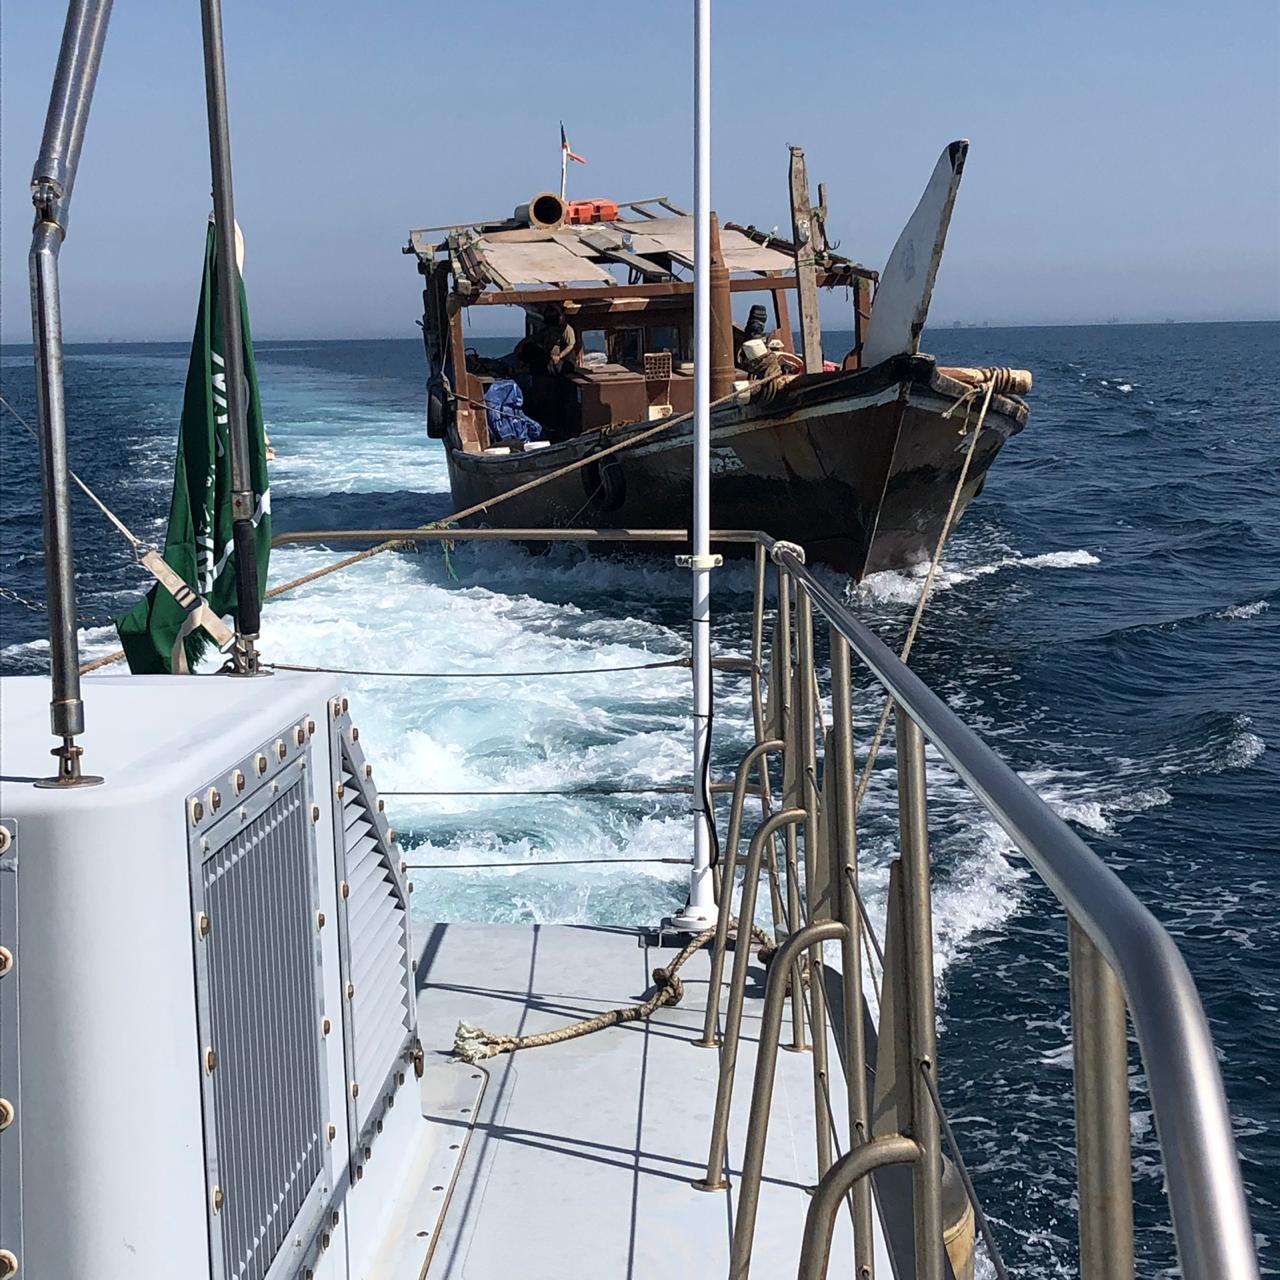 اتصال هاتفي ينتهي بإنقاذ كويتي تعطل قاربه في المياه الإقليمية السعودية